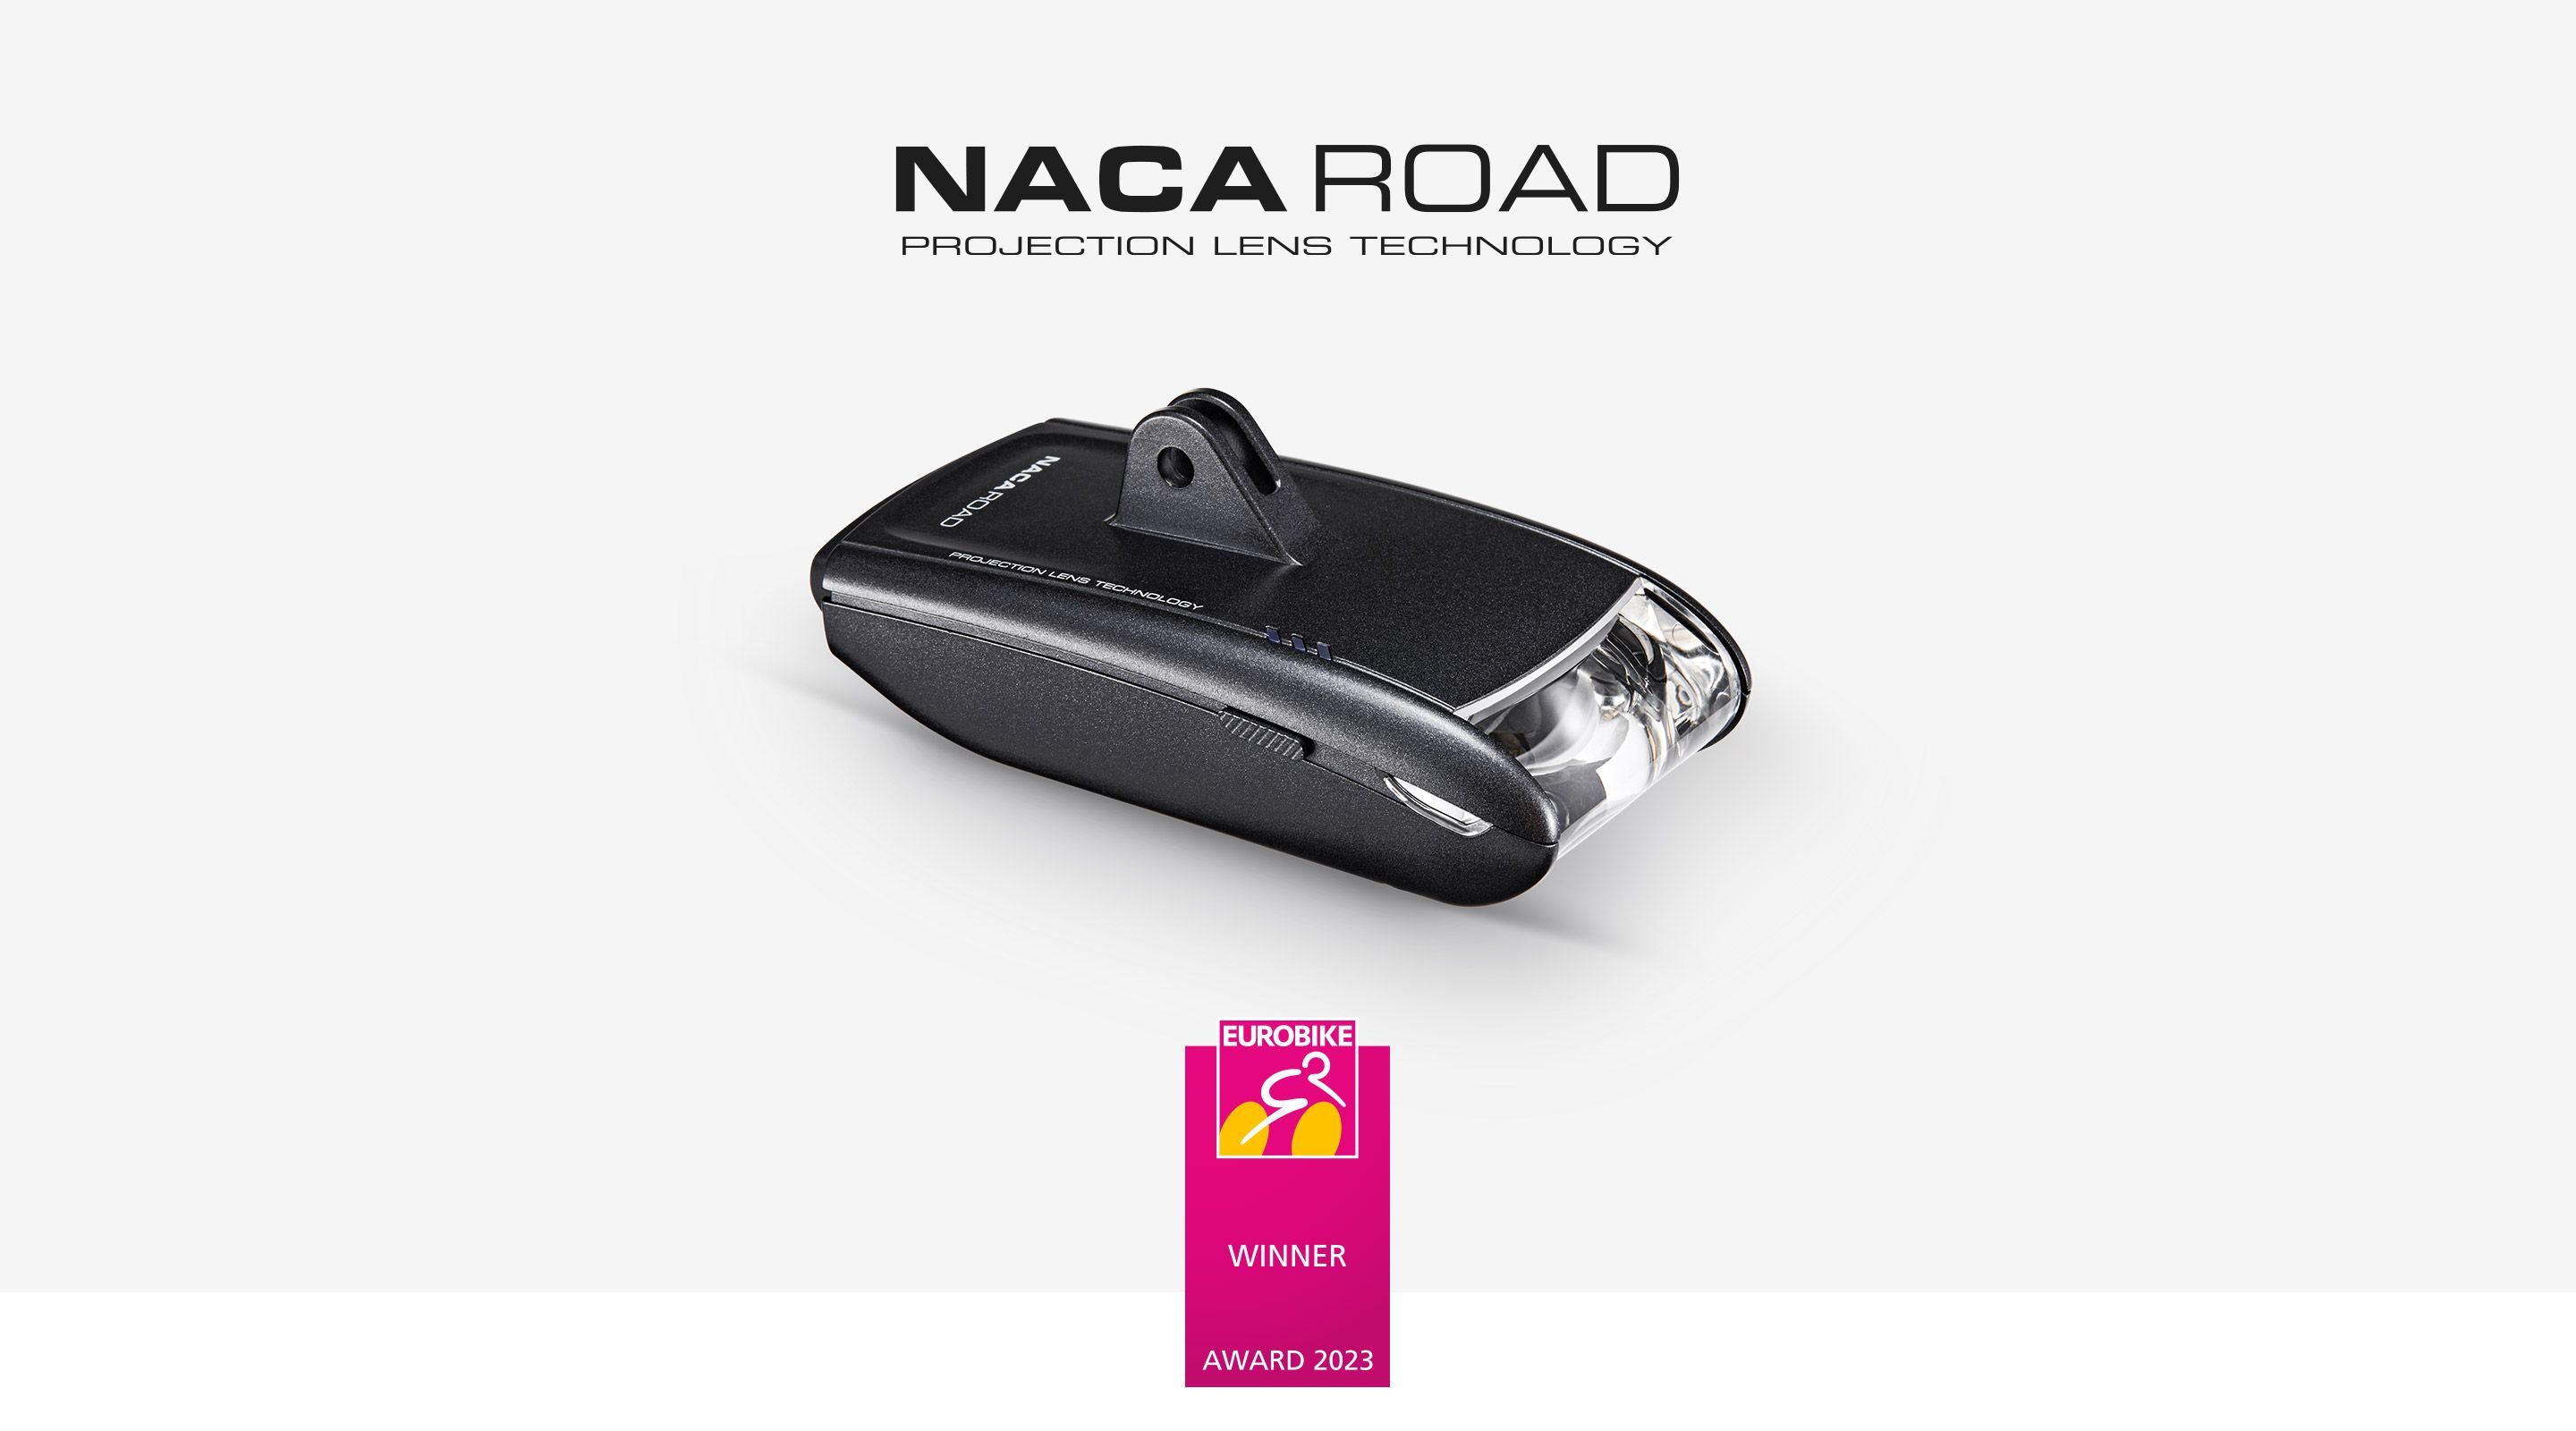 NACA Road mit Eurobike Award ausgezeichnet! - Der aerodynamische High-End-Scheinwerfer NACA Road von LightSKIN erhält den renommierten Eurobike Award 2023. Die herausragende Projektionslinsen-Technologie aus der Automotive-Industrie setzt neue Standards.